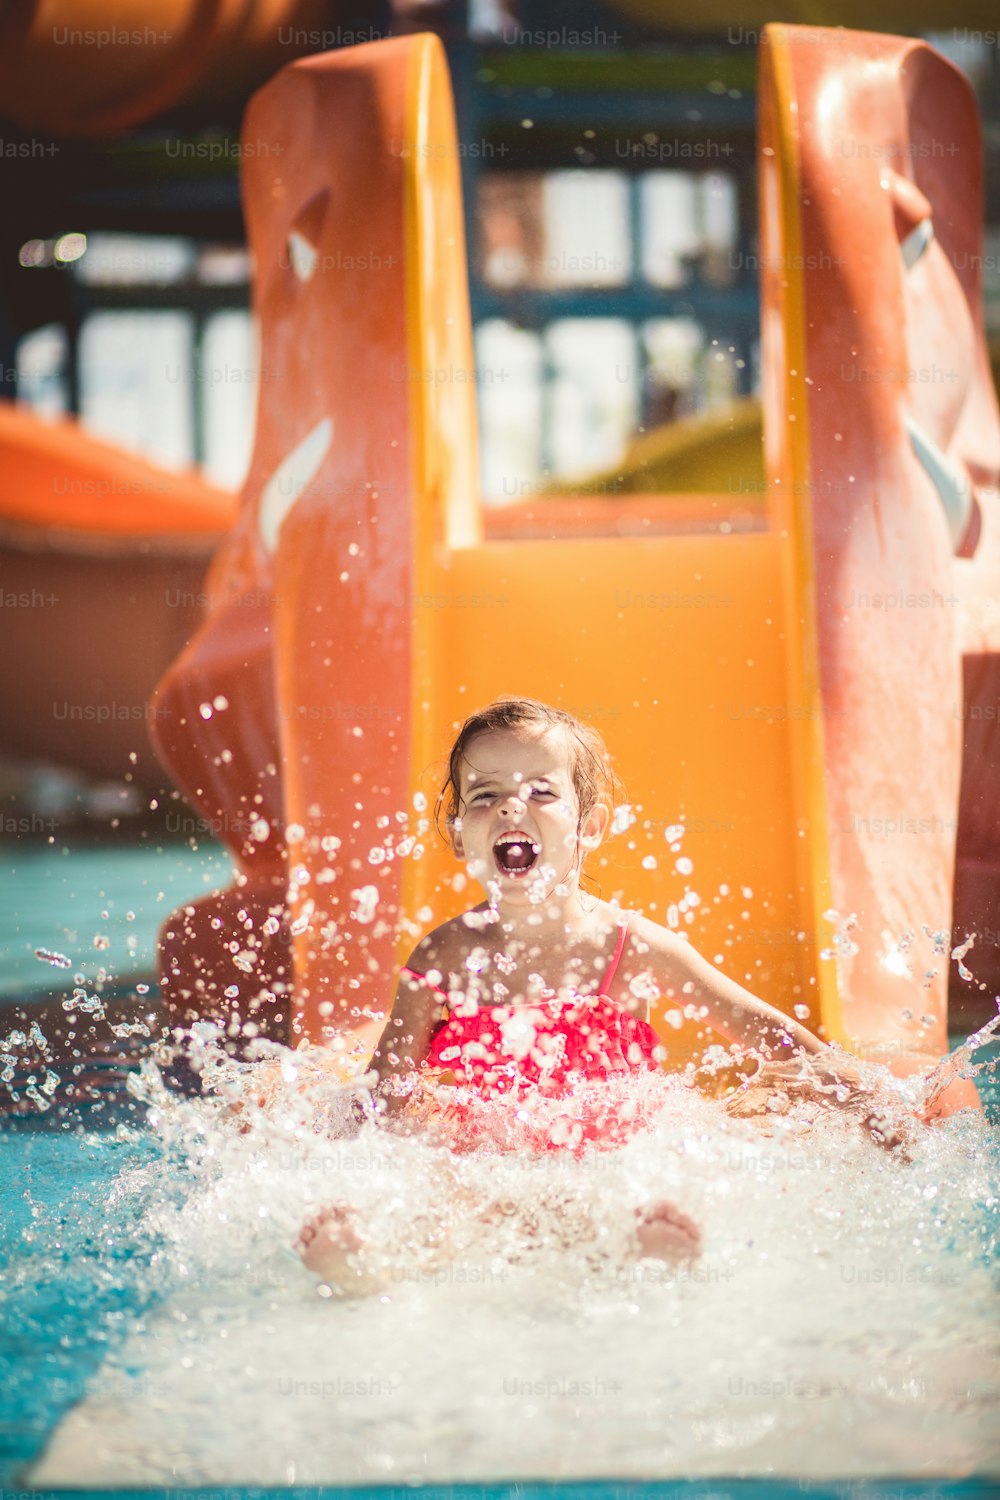 Dias de verão cheios de diversão. Criança se divertindo na piscina.